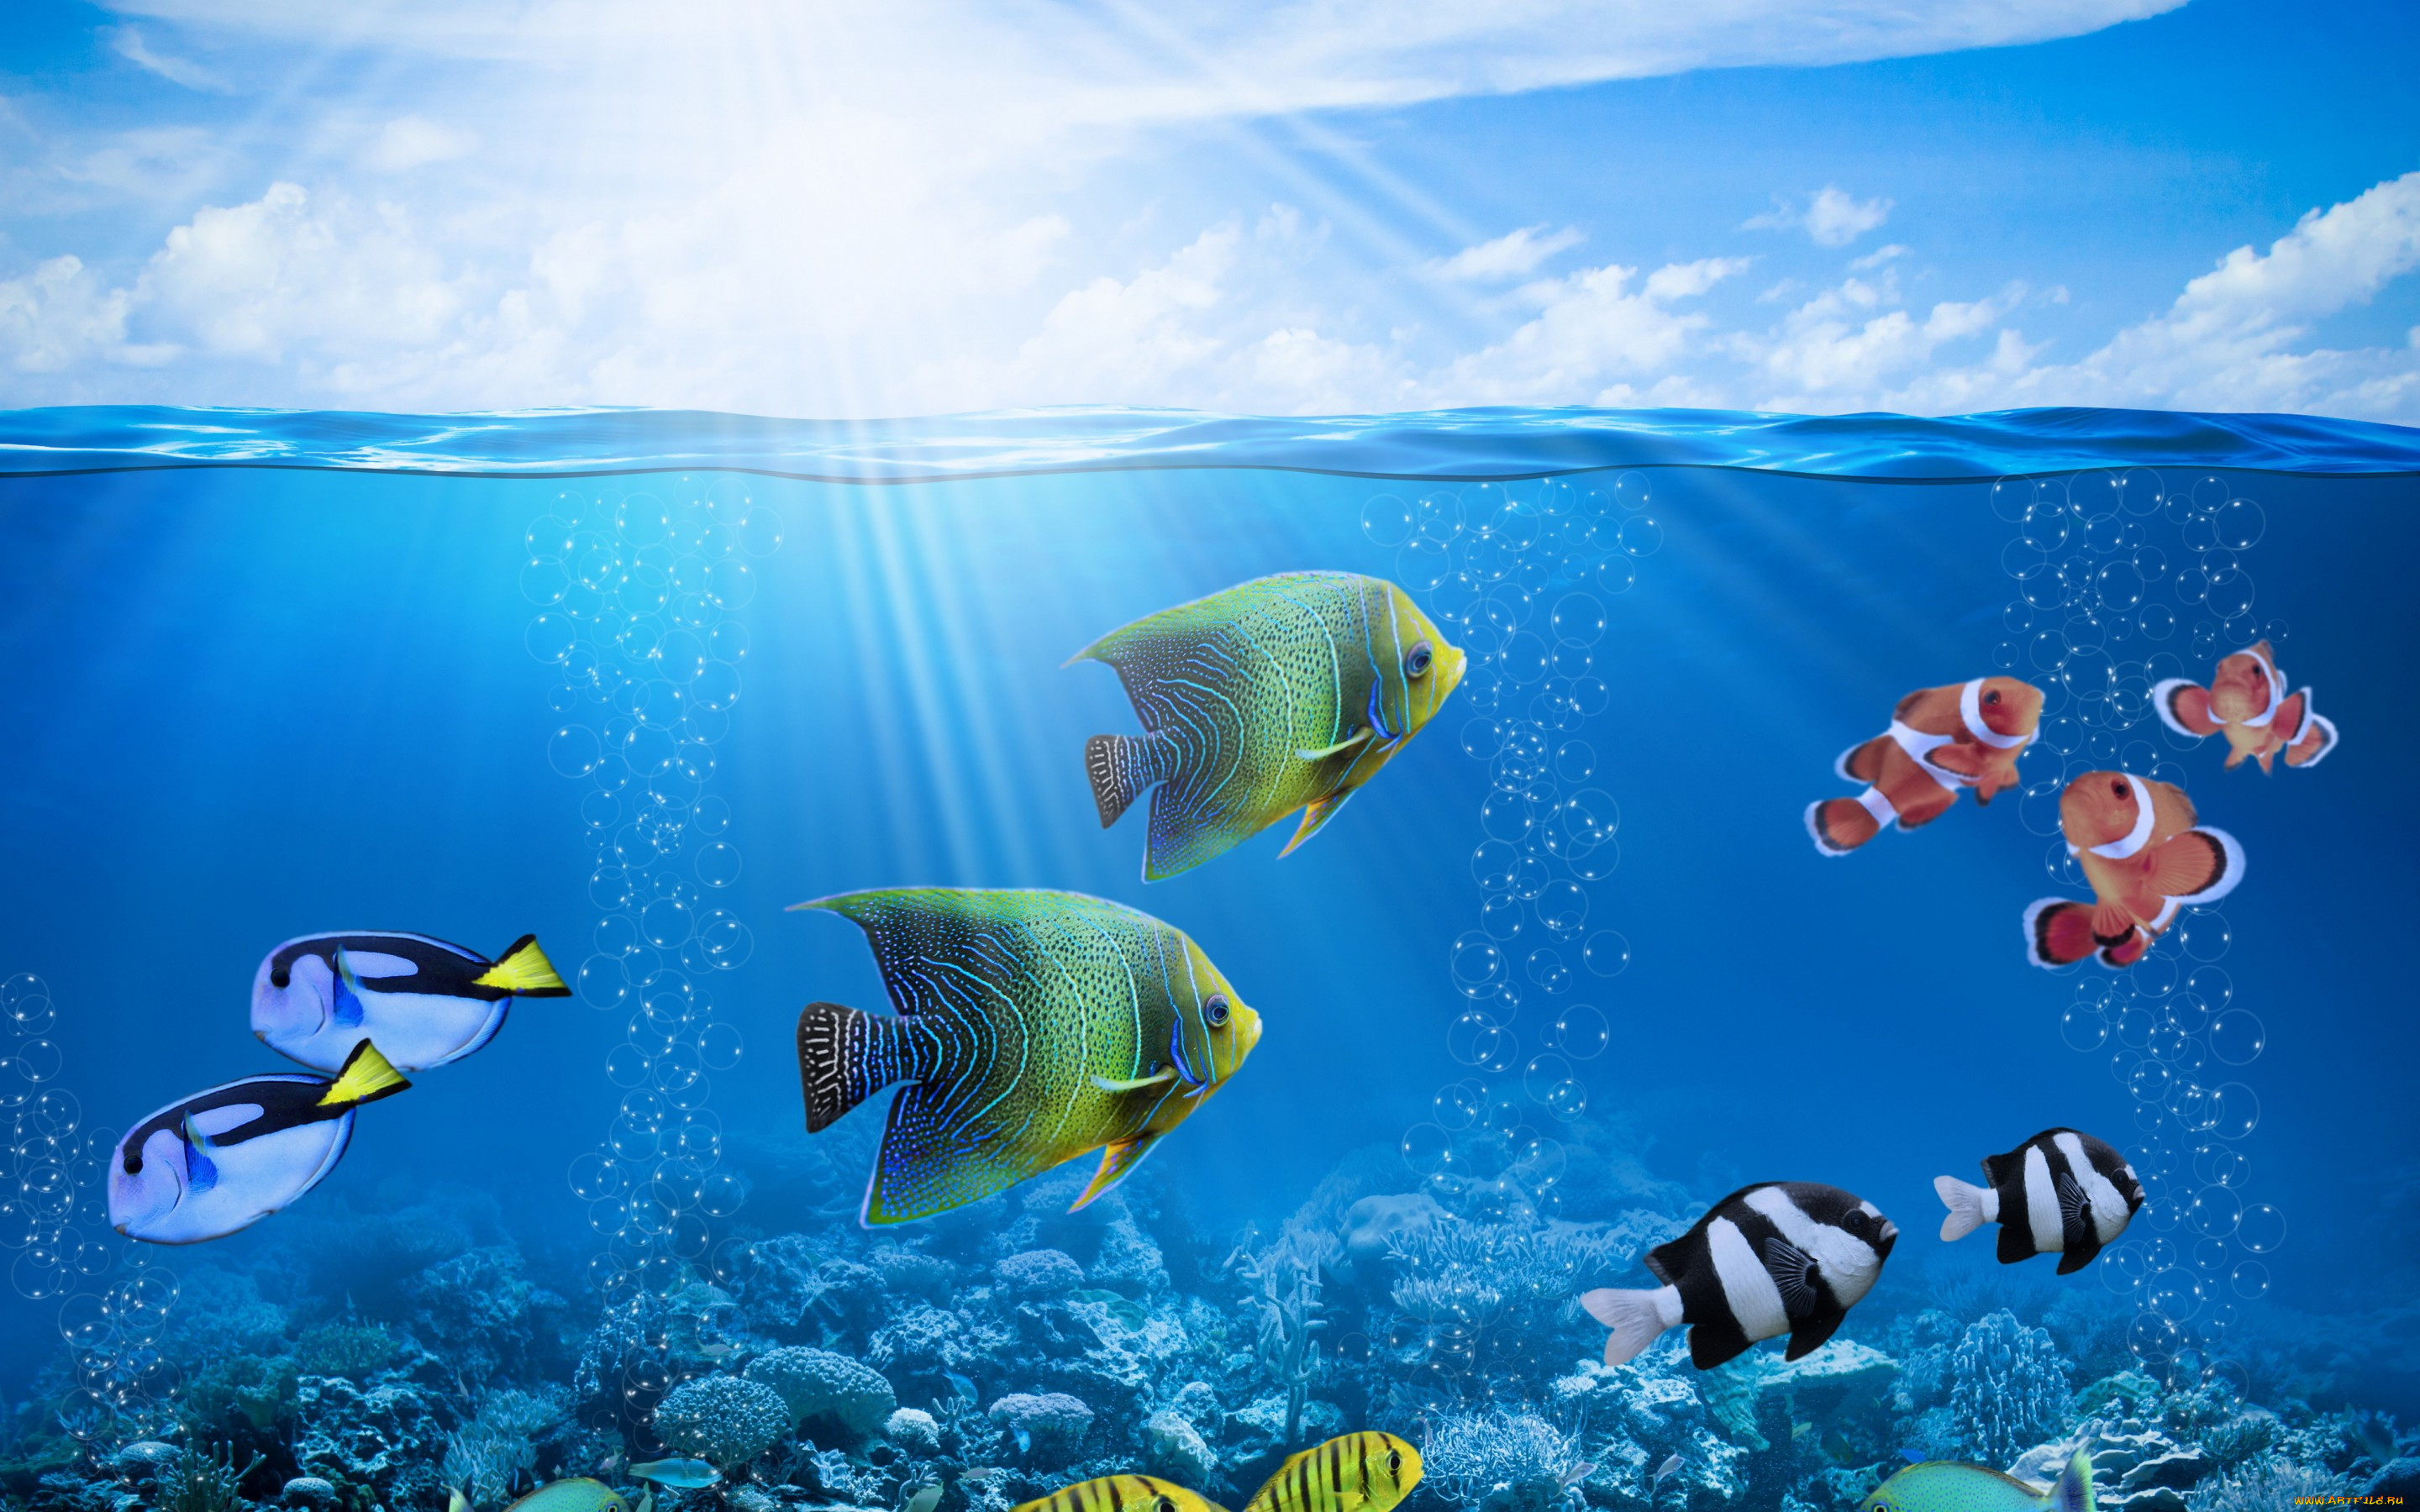 Обои Животные Рыбы, обои для рабочего стола, фотографии животные, рыбы,  ocean, coral, солнце, рыбки, коралловый, риф, fishes, подводный, мир,  tropical, reef, underwater, пузыри, лучи Обои для рабочего стола, скачать  обои картинки заставки